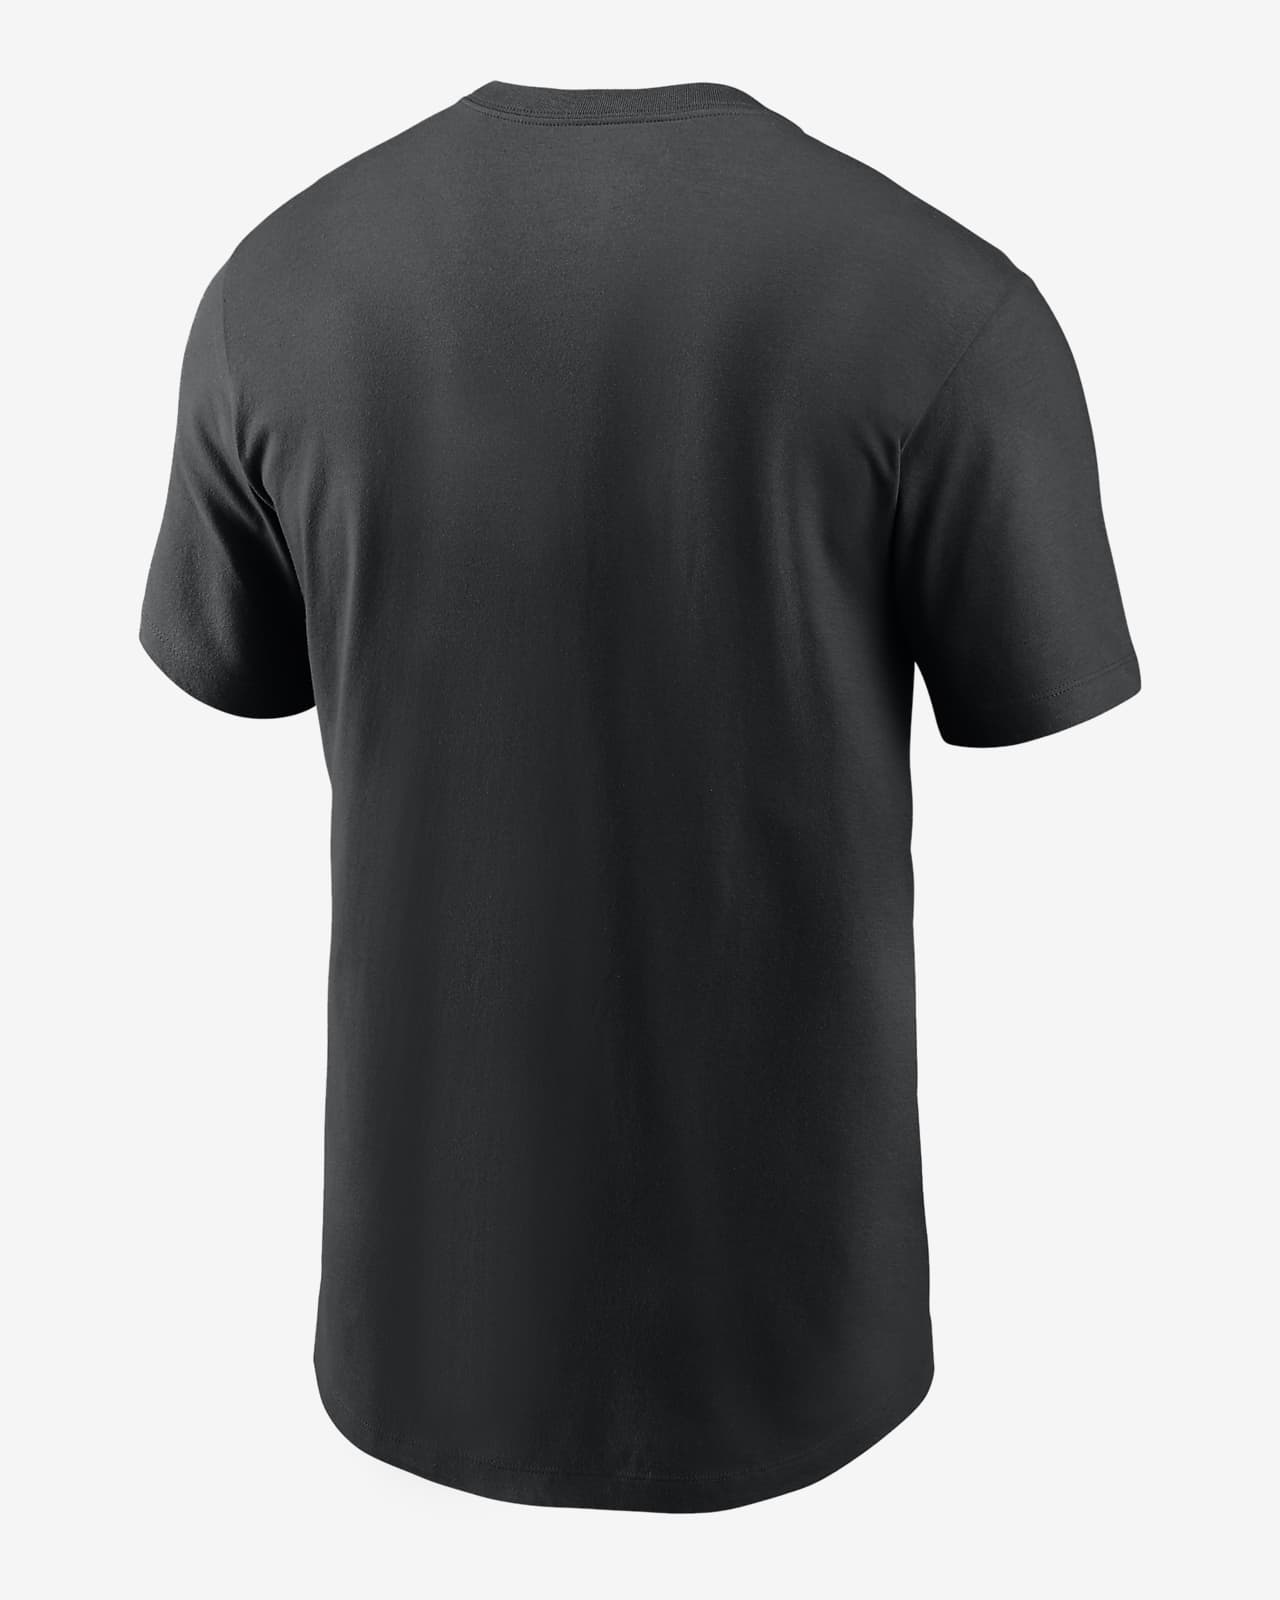 Profile Men's Black Baltimore Orioles Sublimation T-Shirt